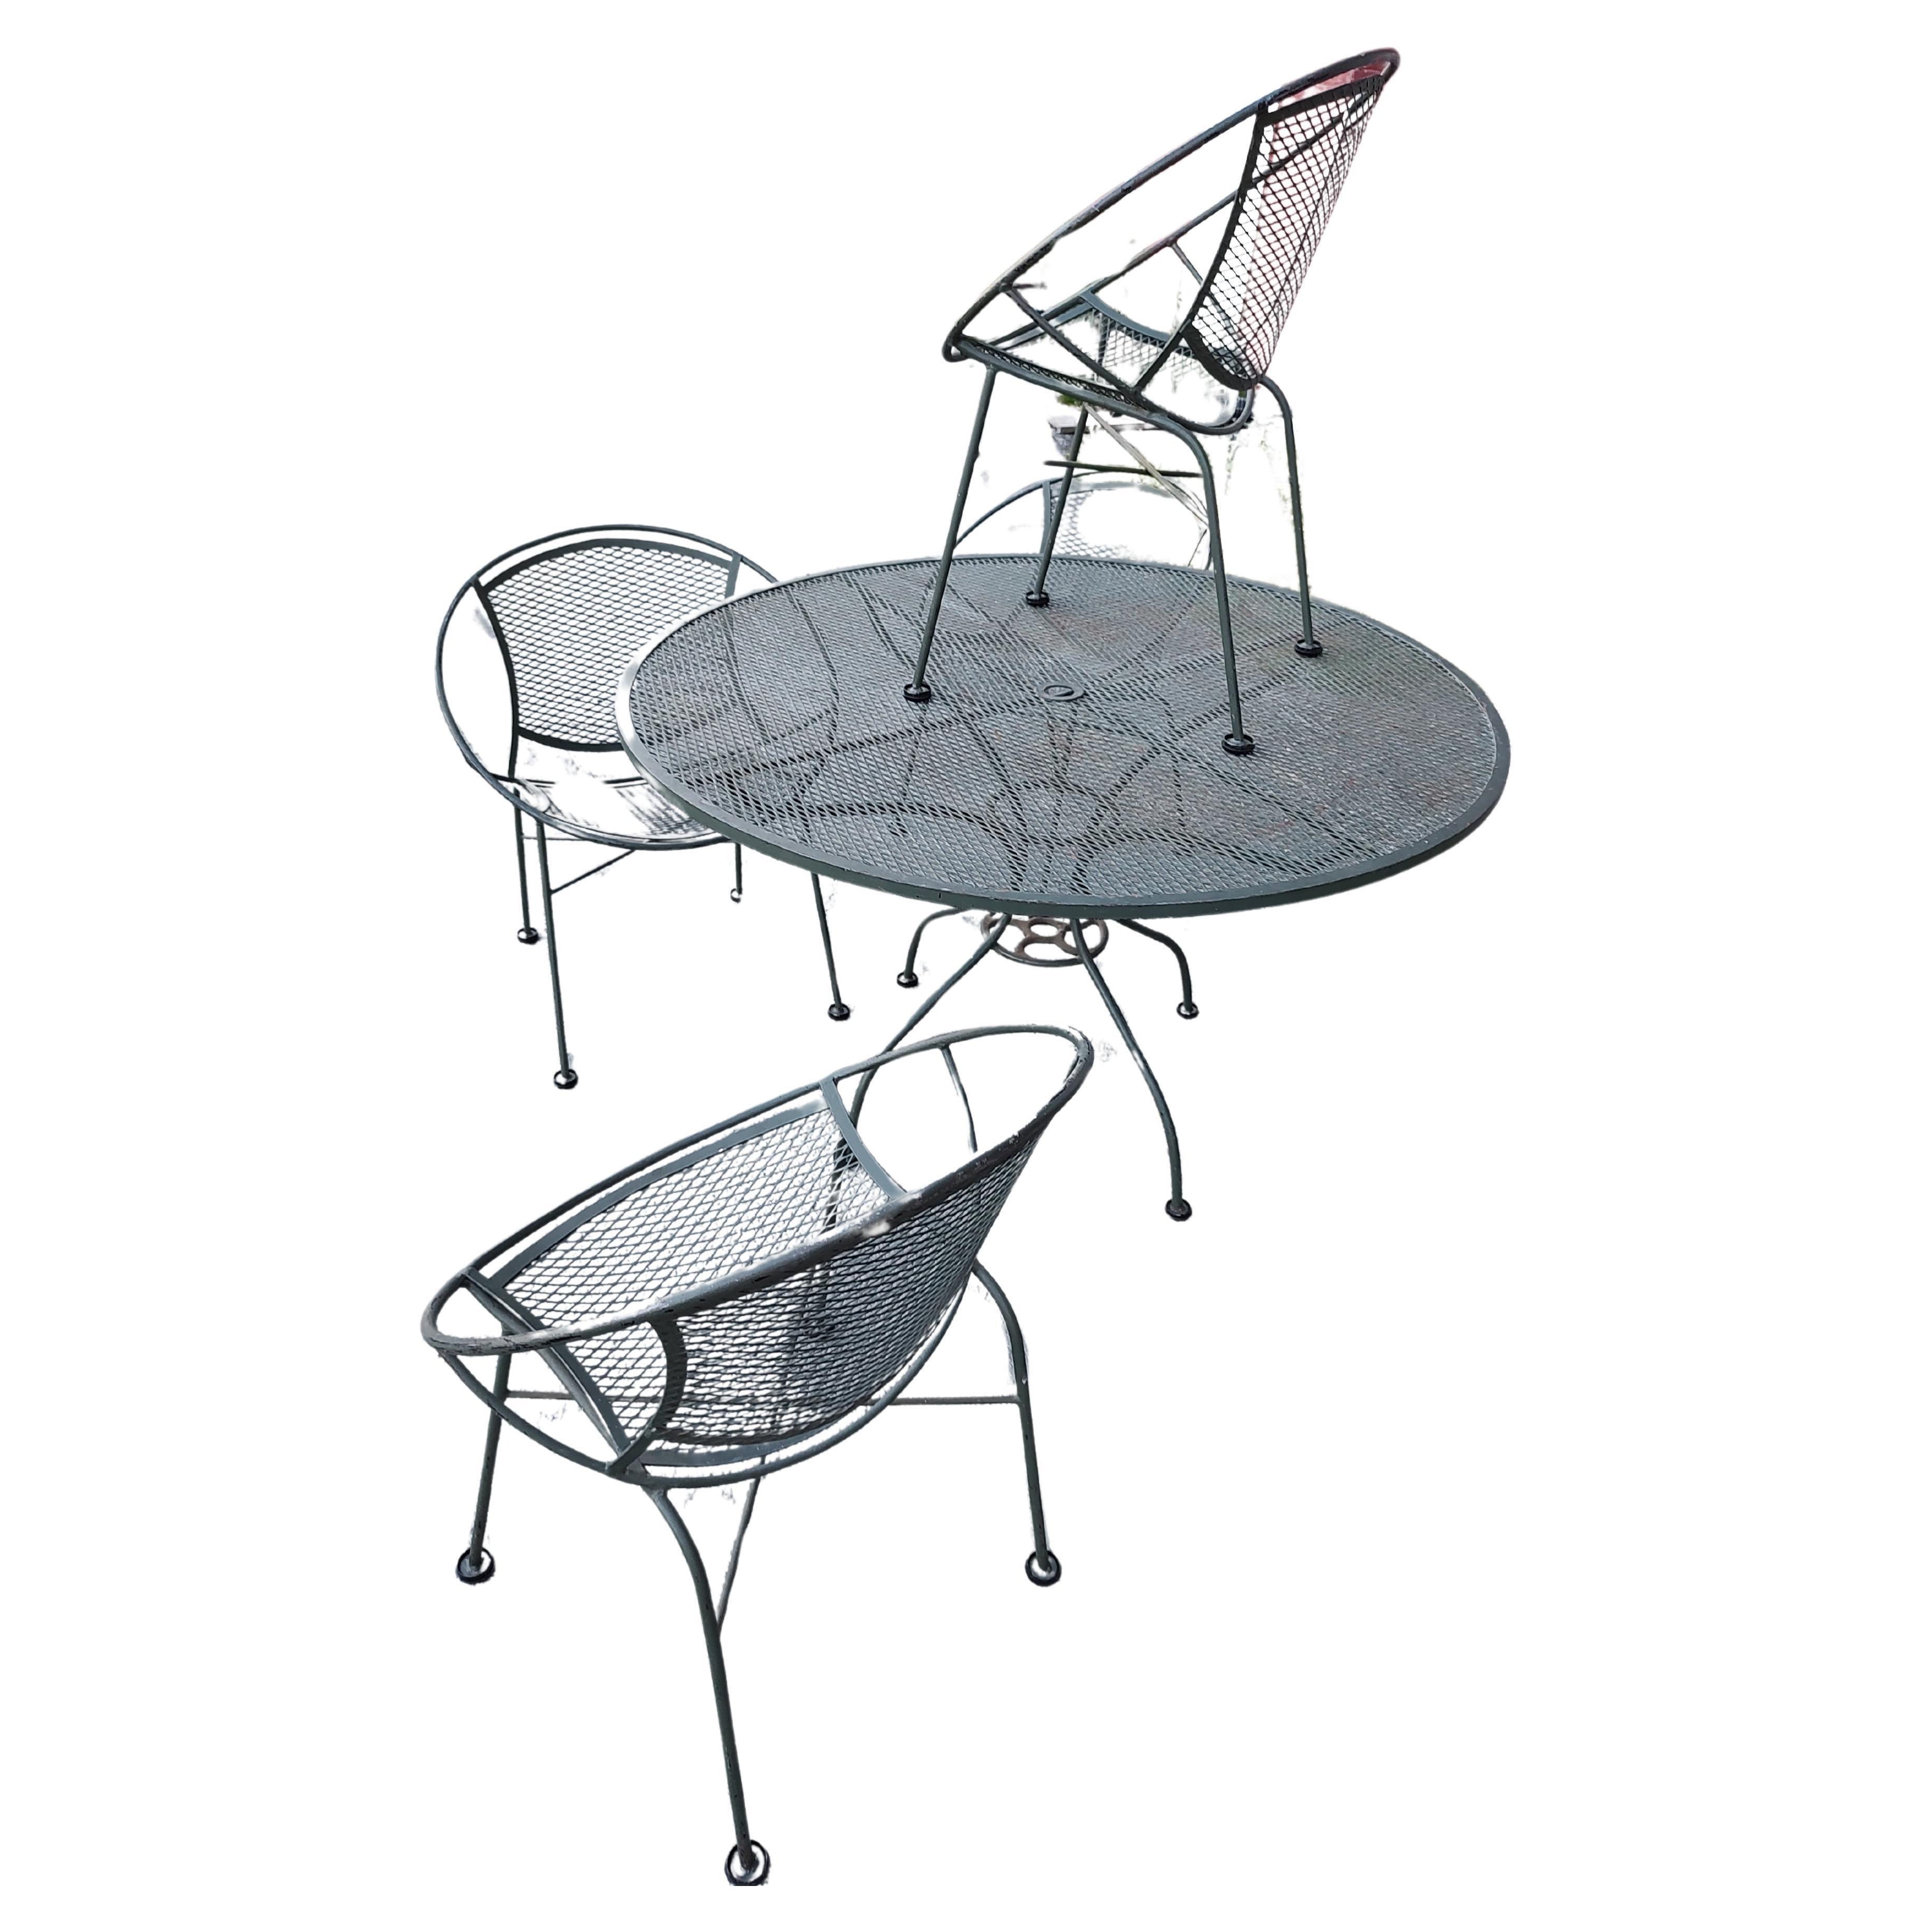 salterini radar chairs